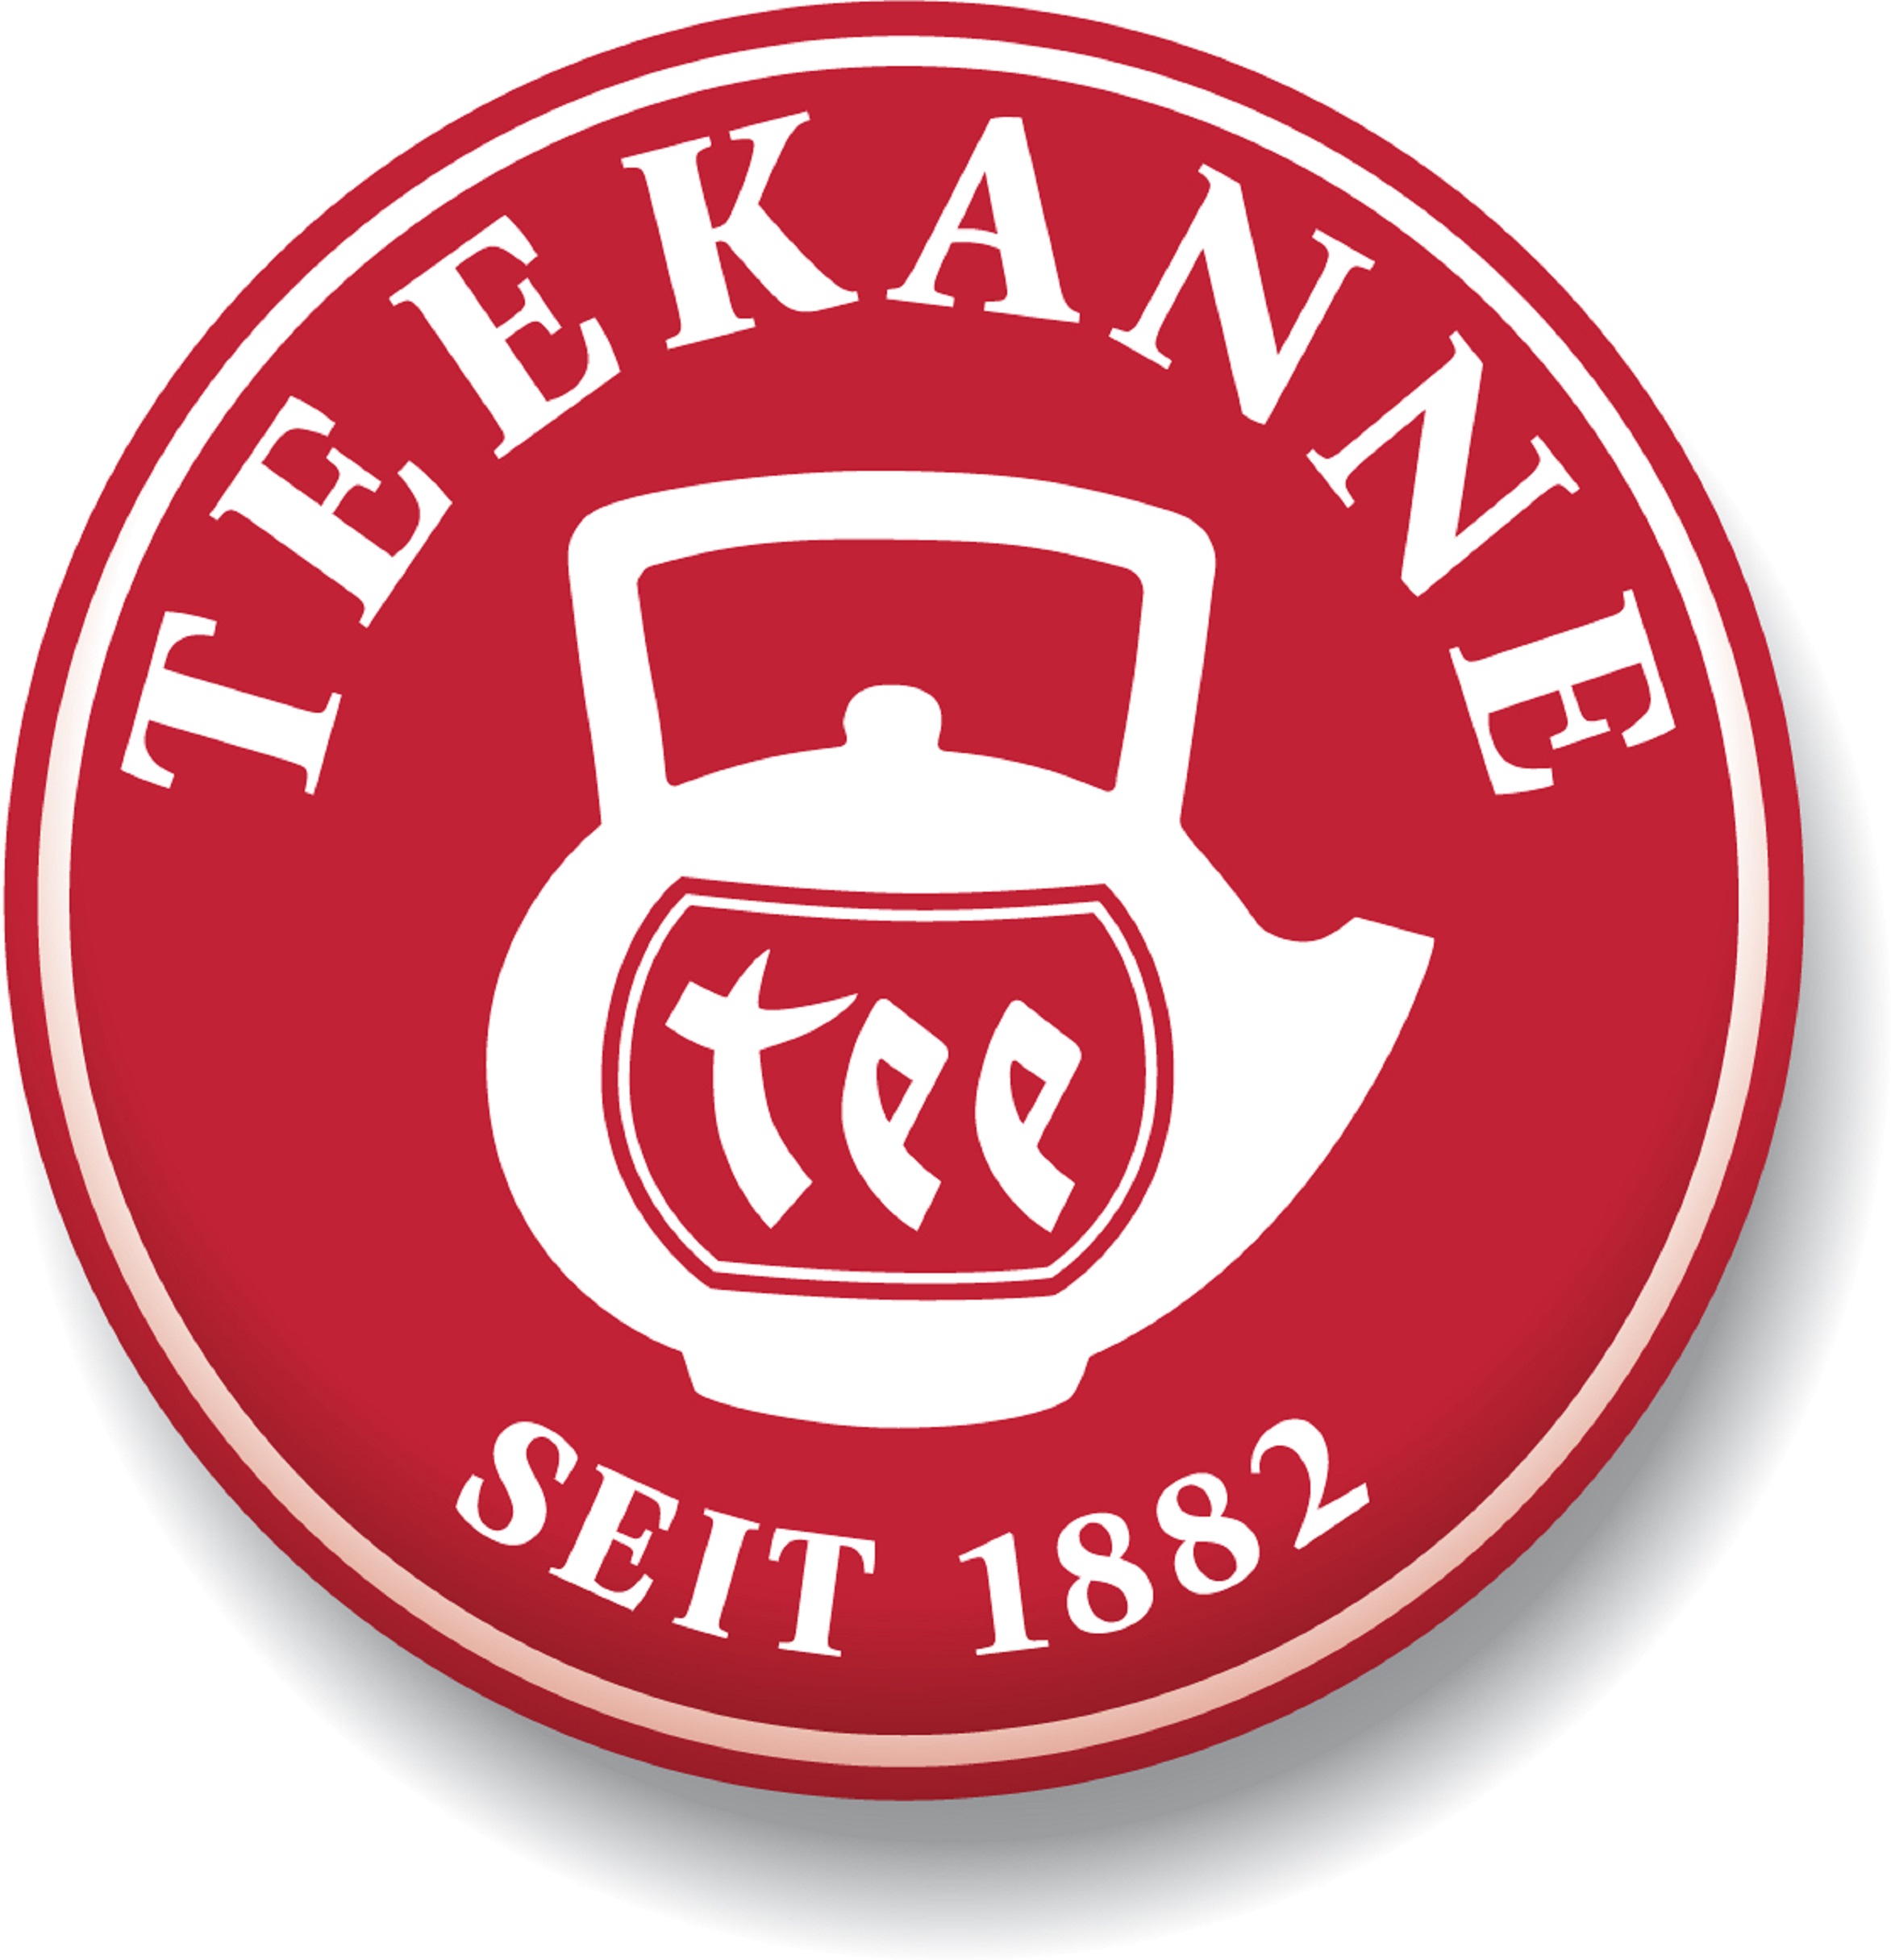 Teekanne, es una marca alemana con más de 130 años de experiencia y sabiduría en la elaboración de te. Posee una amplia gama de productos de té prémium que incluye té verde, té negro y infusiones. Todos los productos de la marca son sin azúcar agregada, sin aditivos artificiales, ni conservantes.